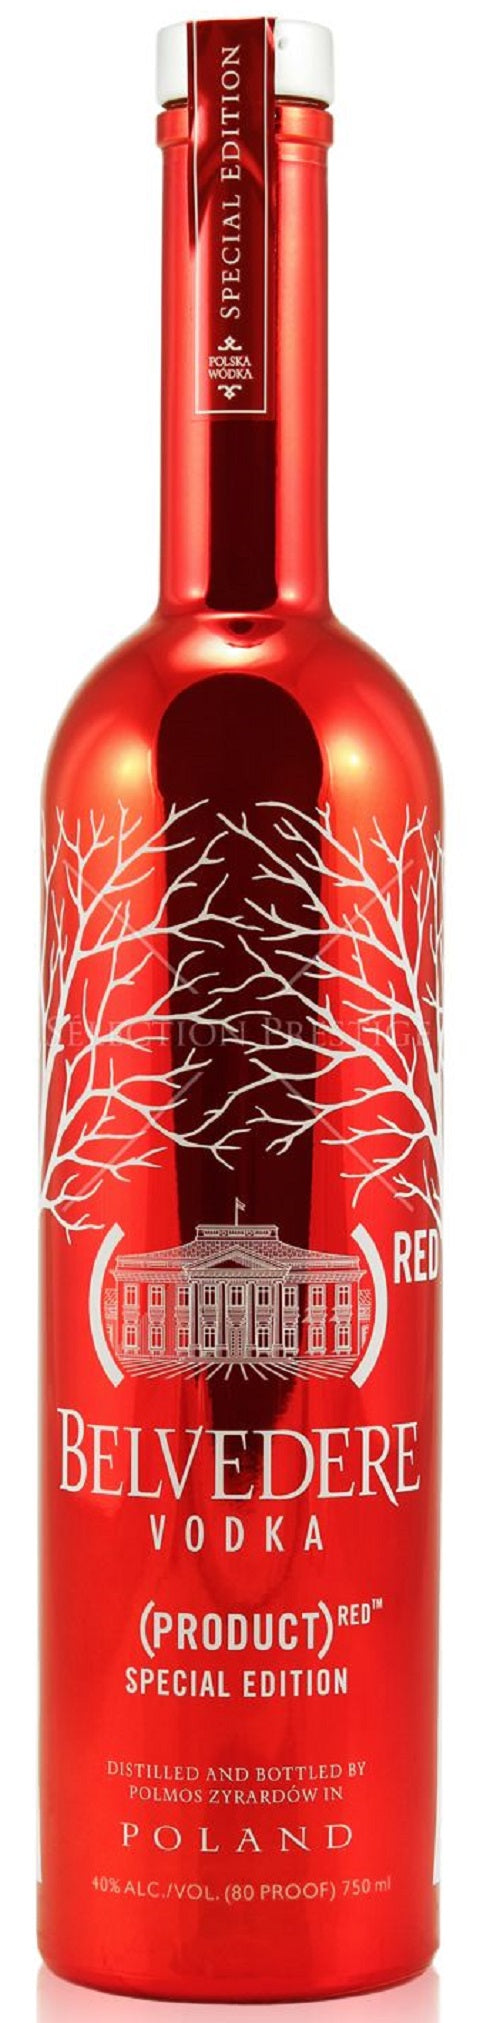 red belvedere vodka